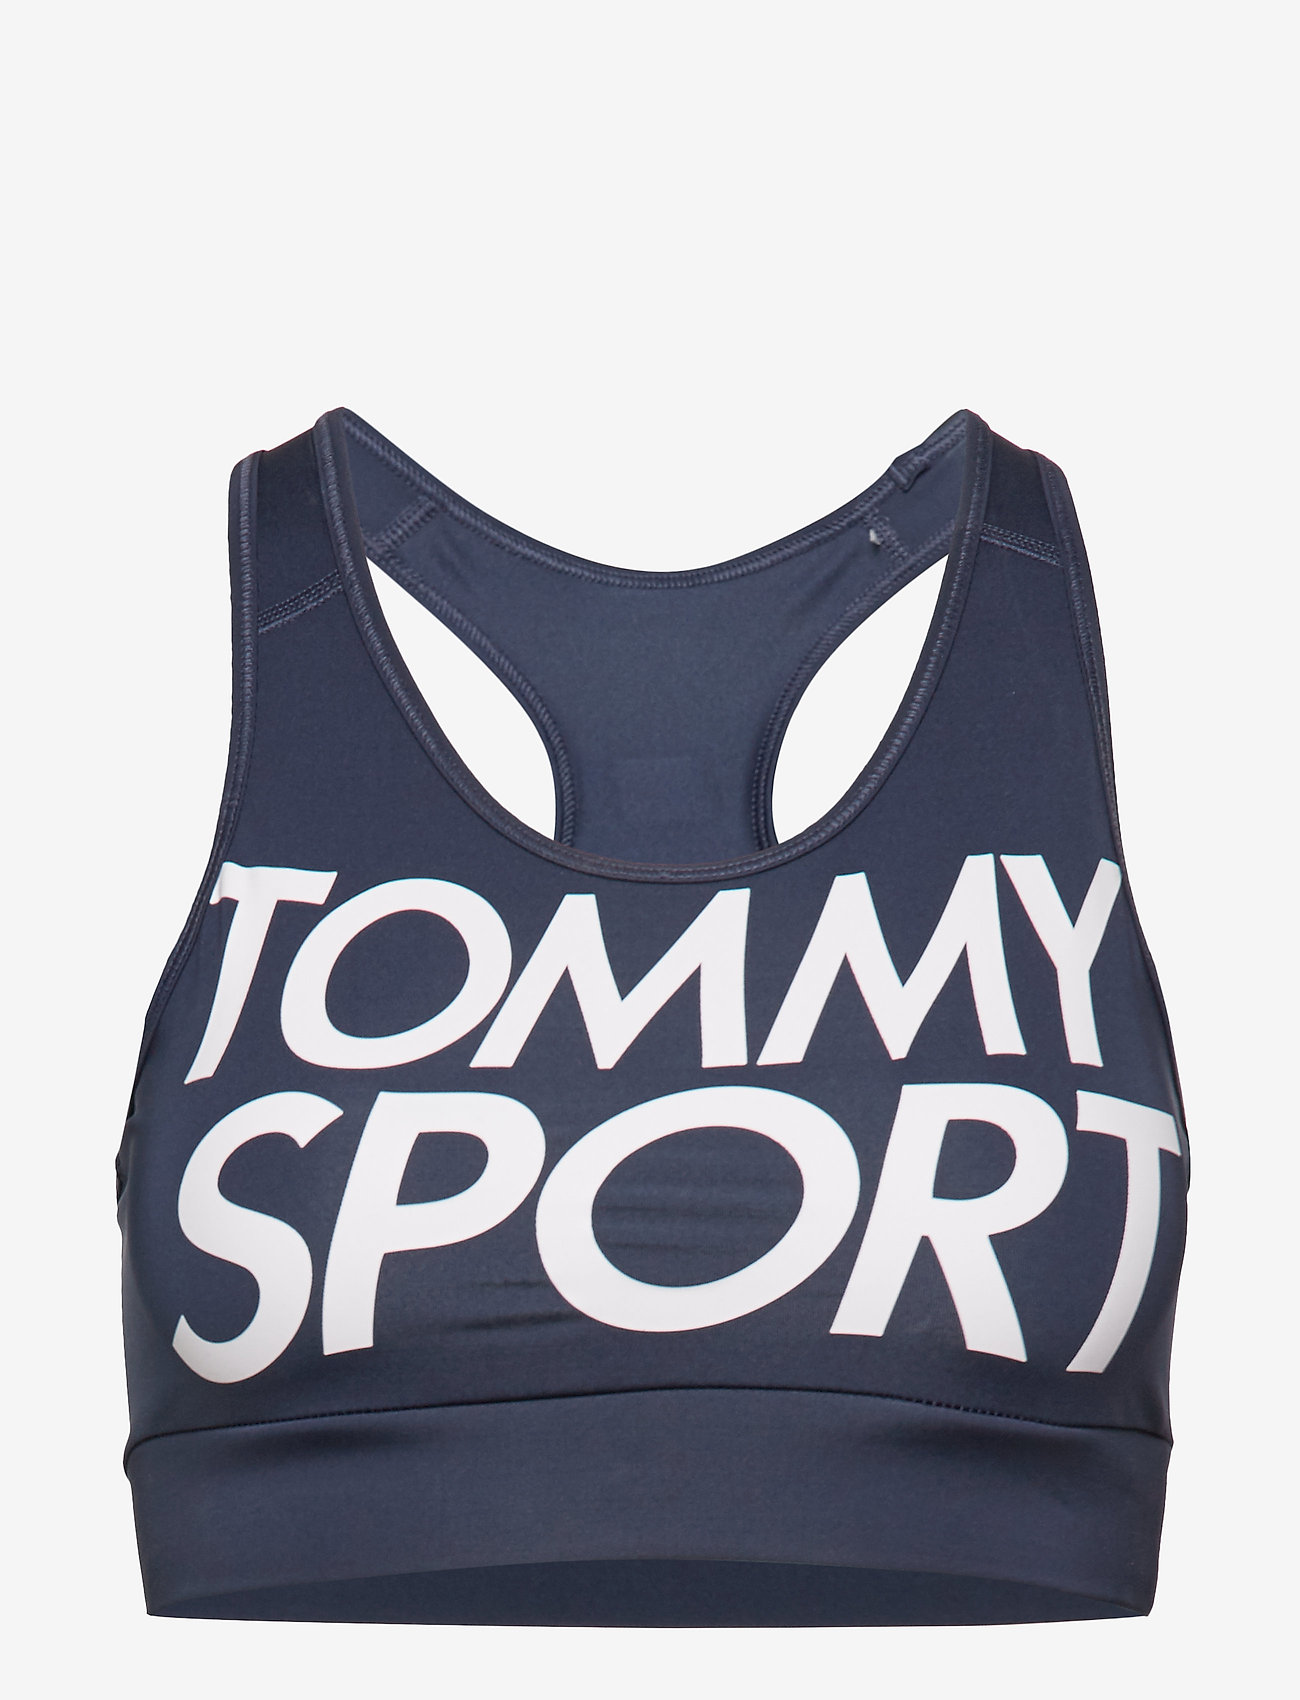 tommy sport vest